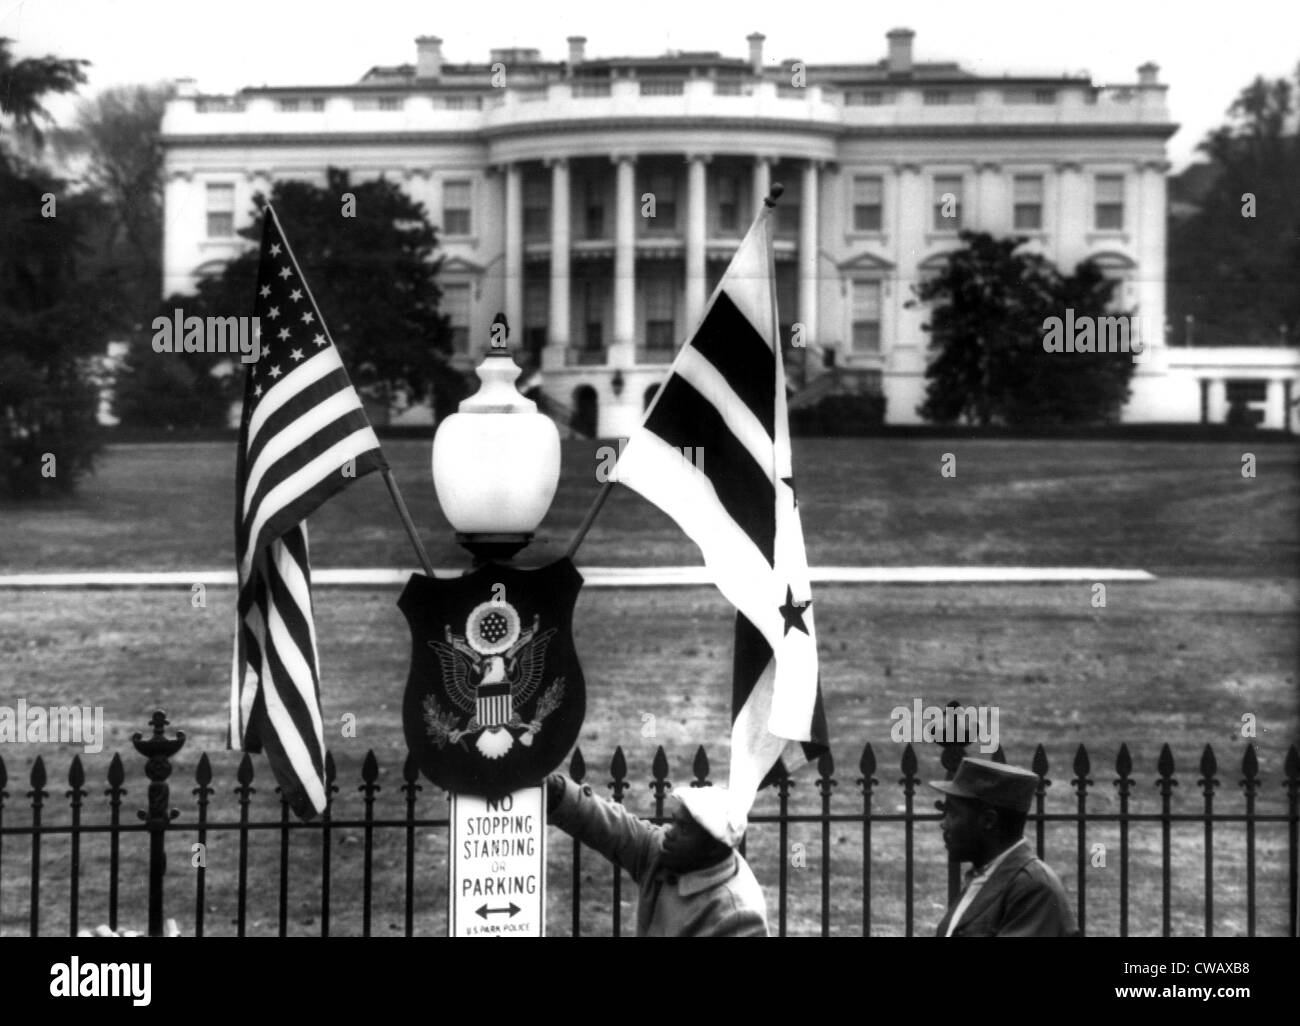 US & District Of Columbia Fahnen schmücken das Gelände des weißen Hauses, 11.03.55. Höflichkeit: CSU Archive / Everett Collection Stockfoto